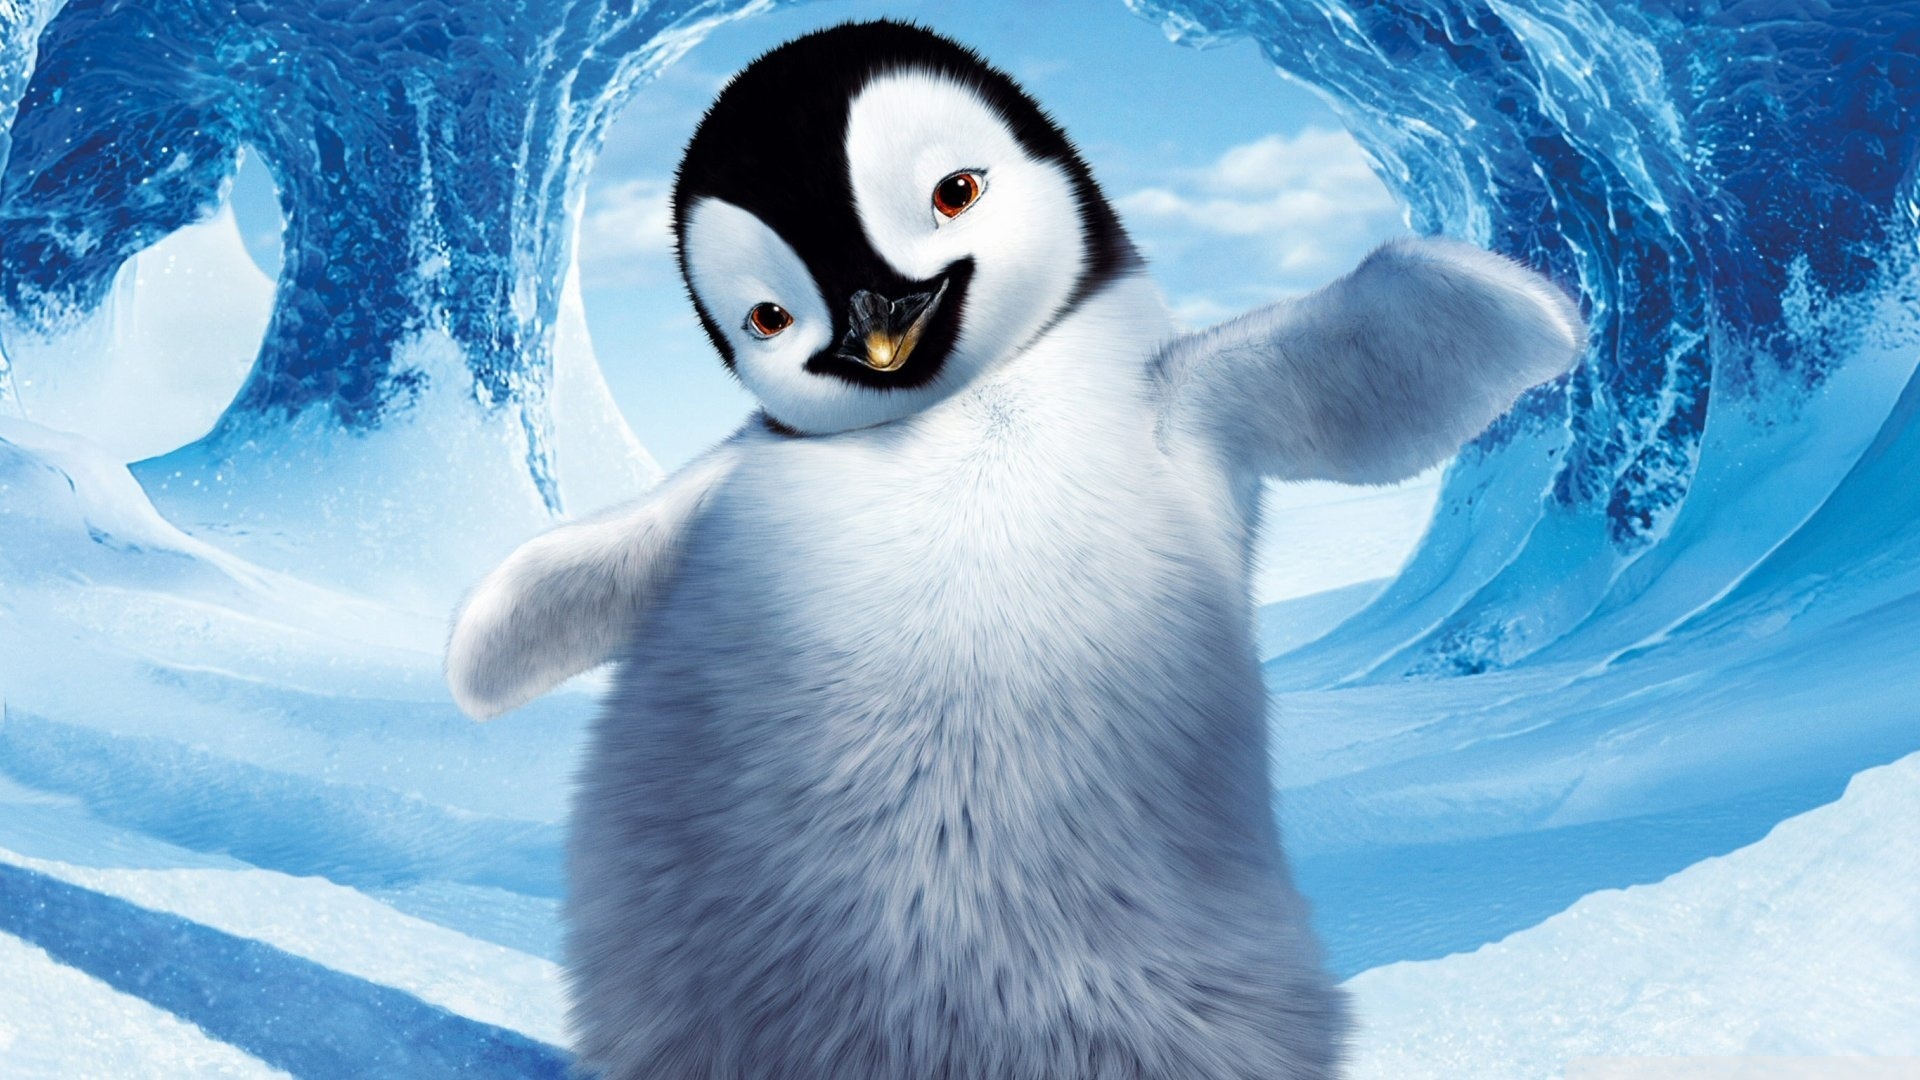 Wallpaper Penguin Desktop Puter Animals